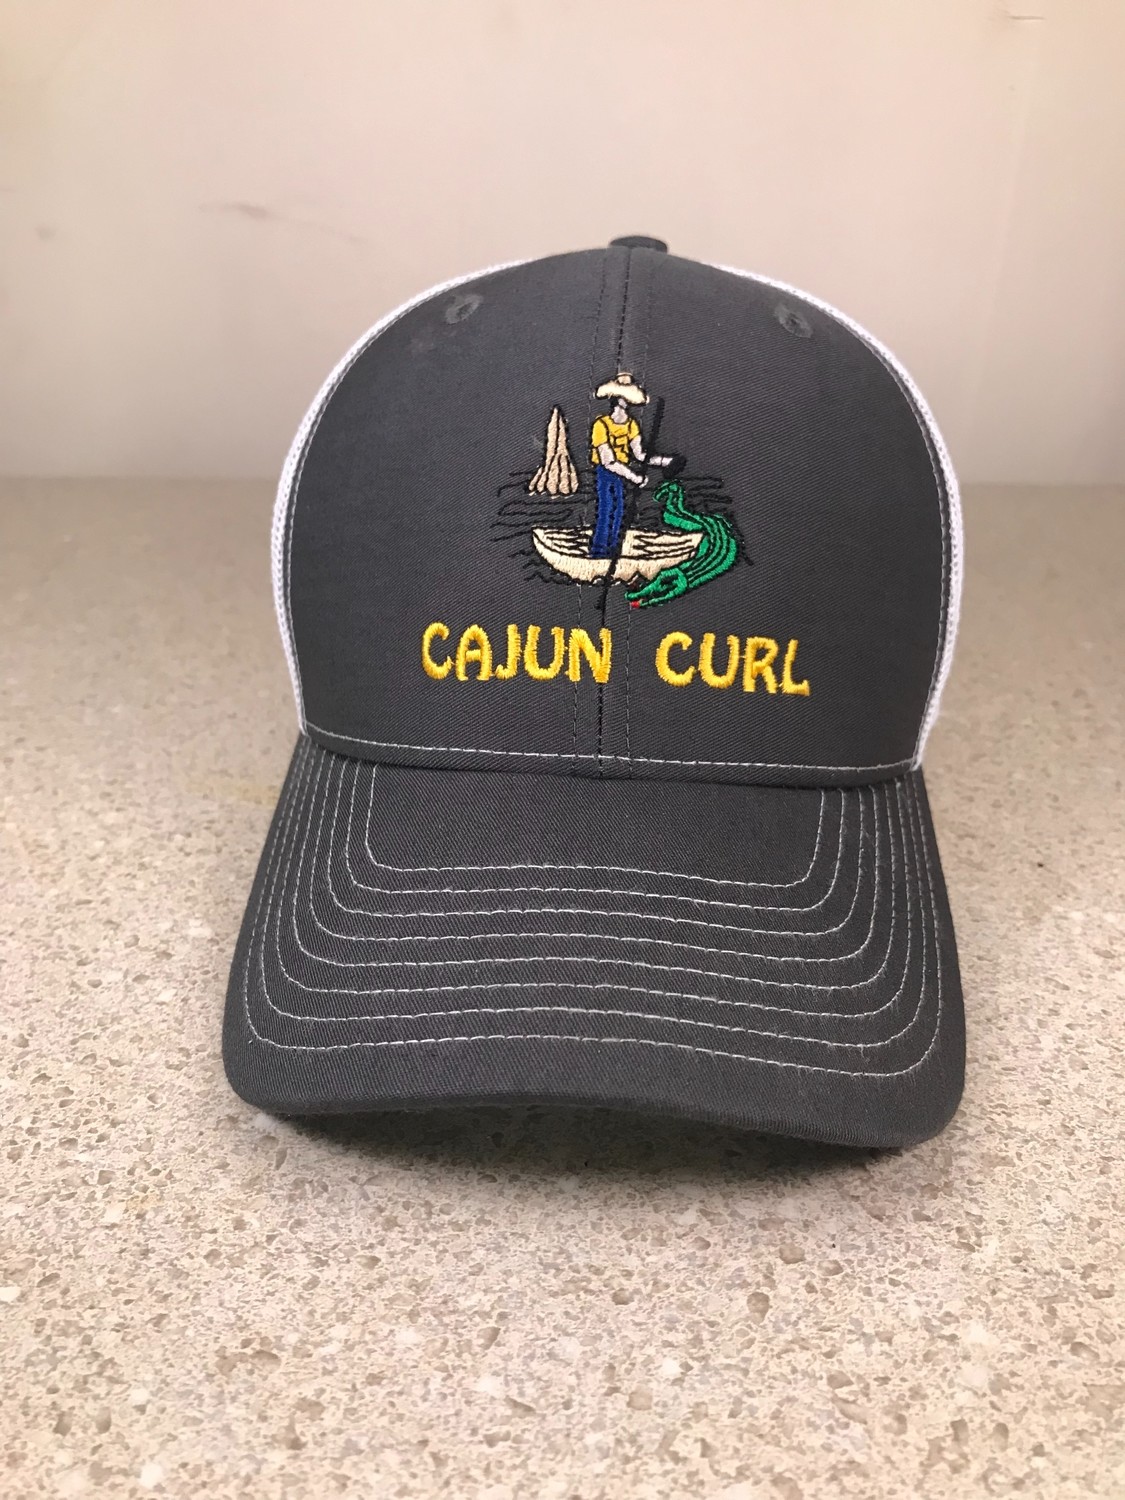 Cajun Curl Trucker Hat